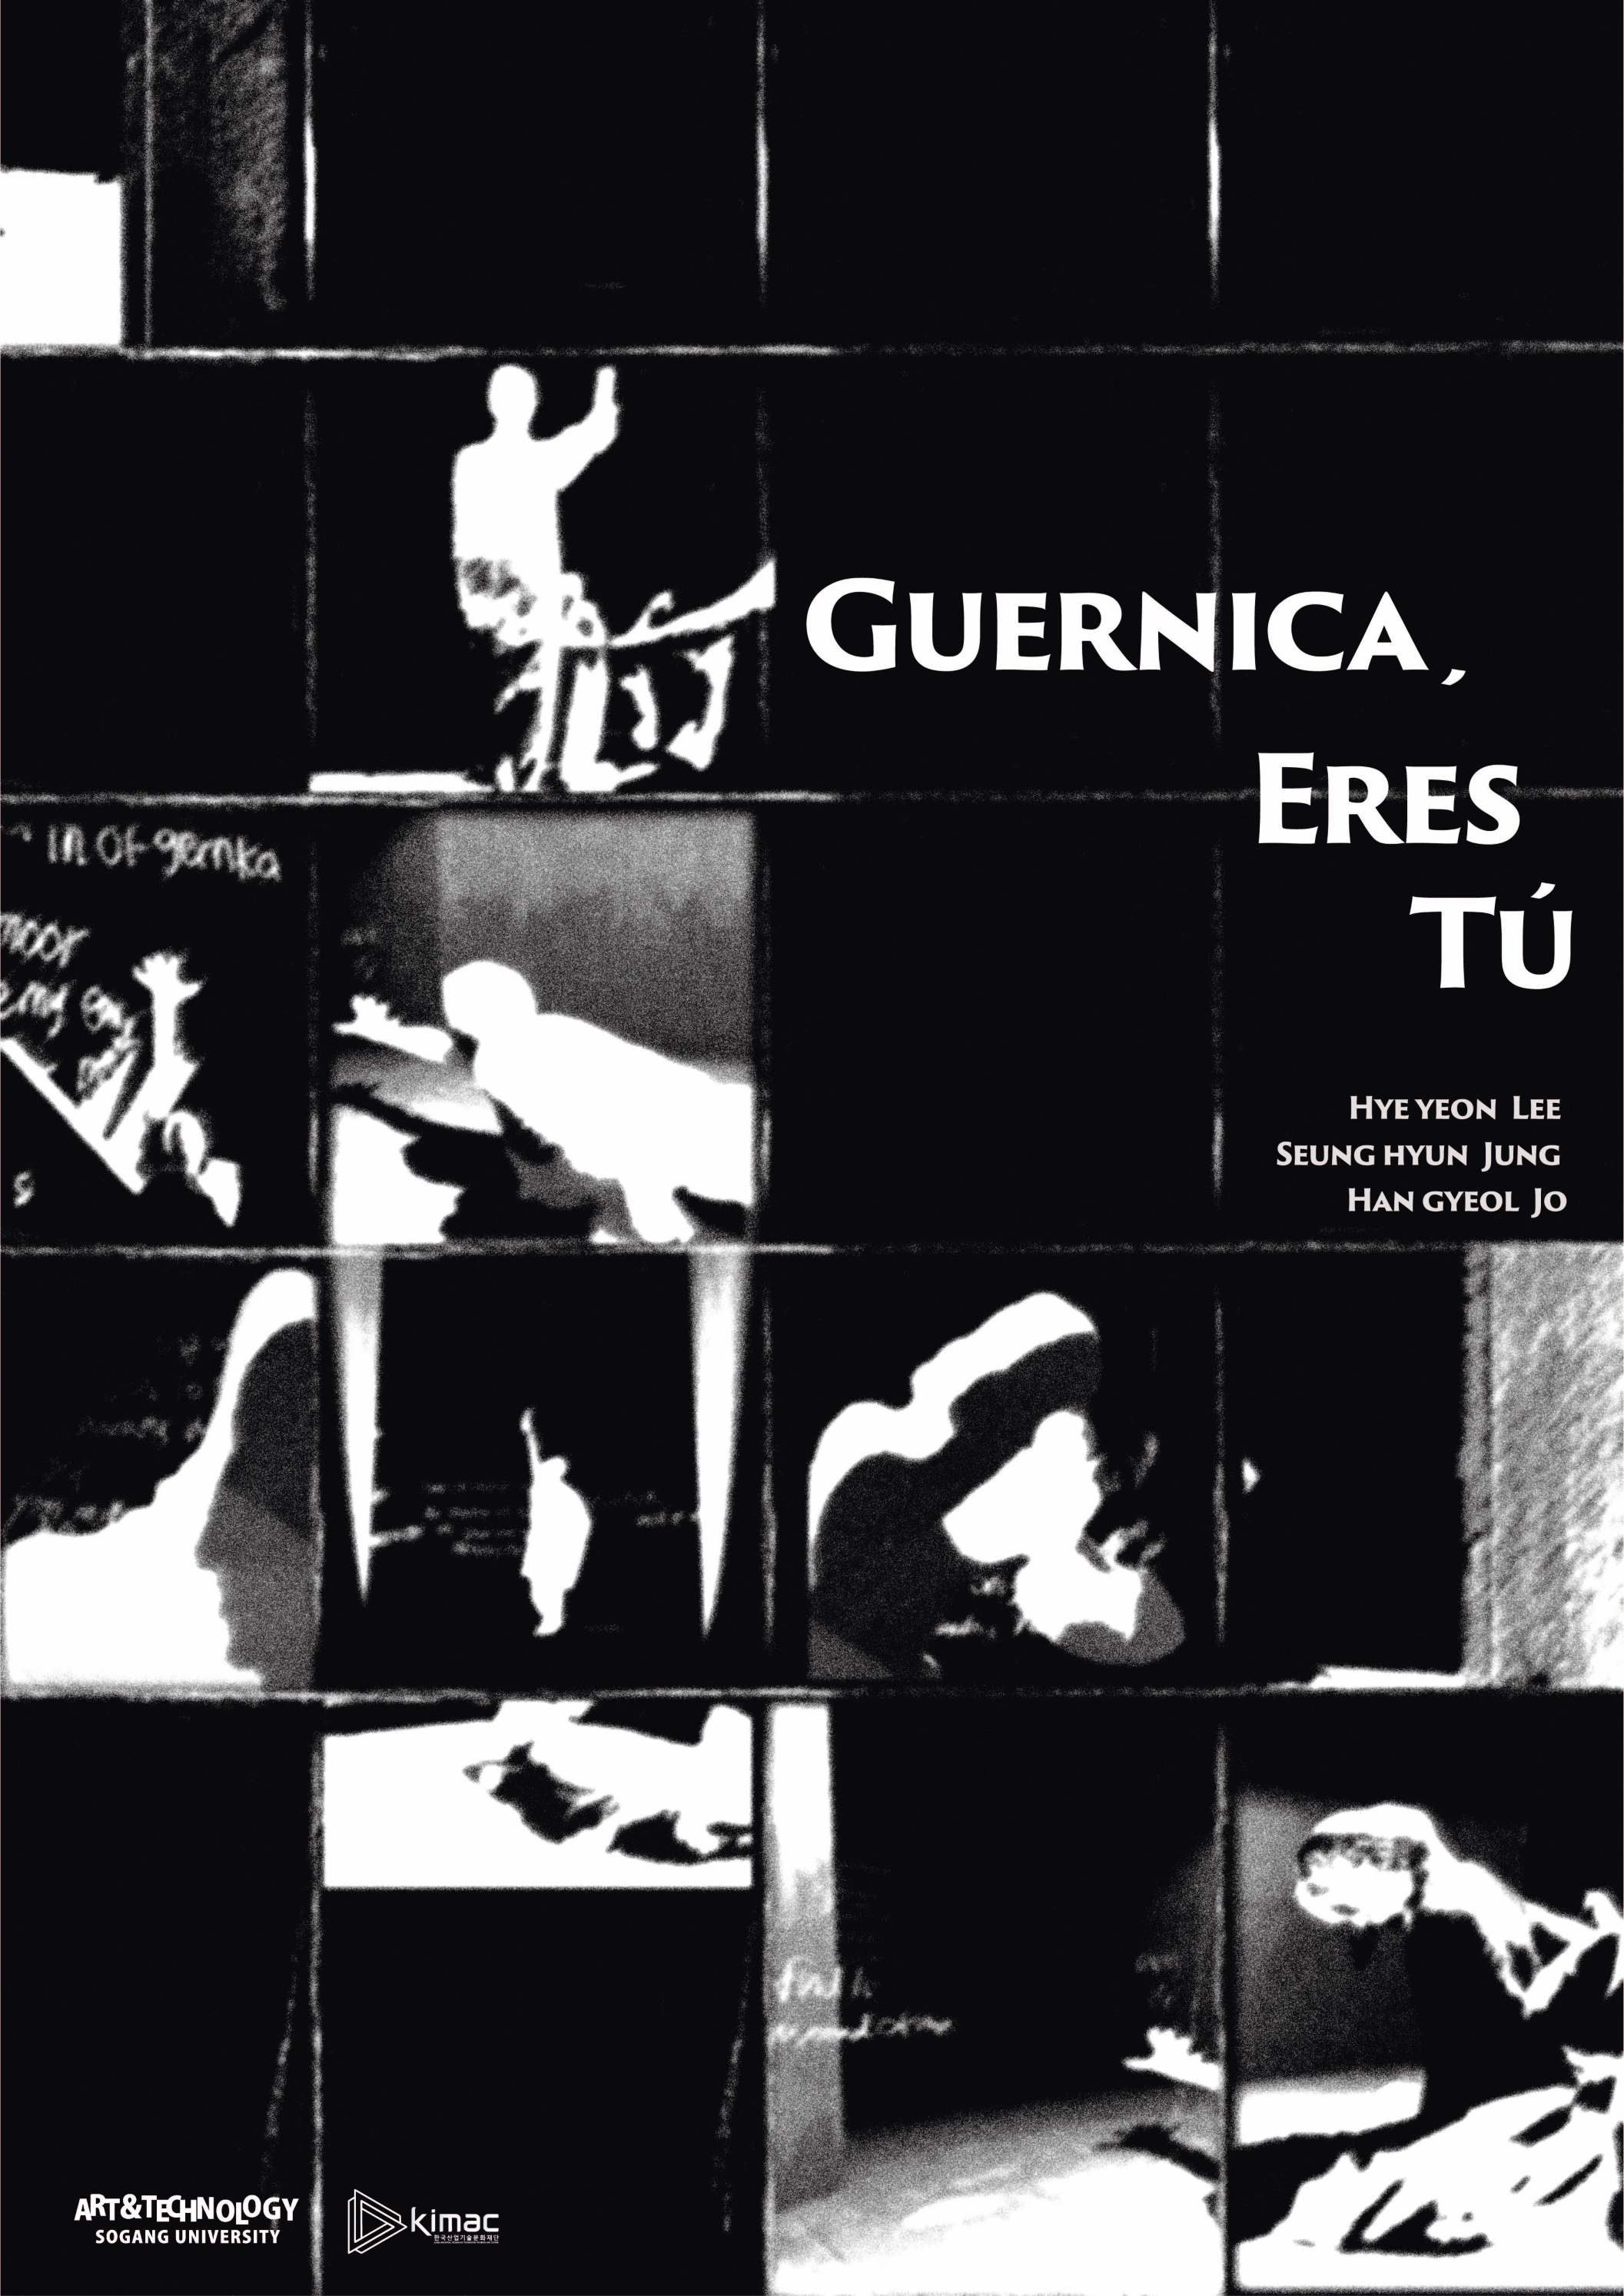 사진 1. VR 영화 <게르니카,
에레스 뚜>(Guernica, eres tú) 작품 포스터